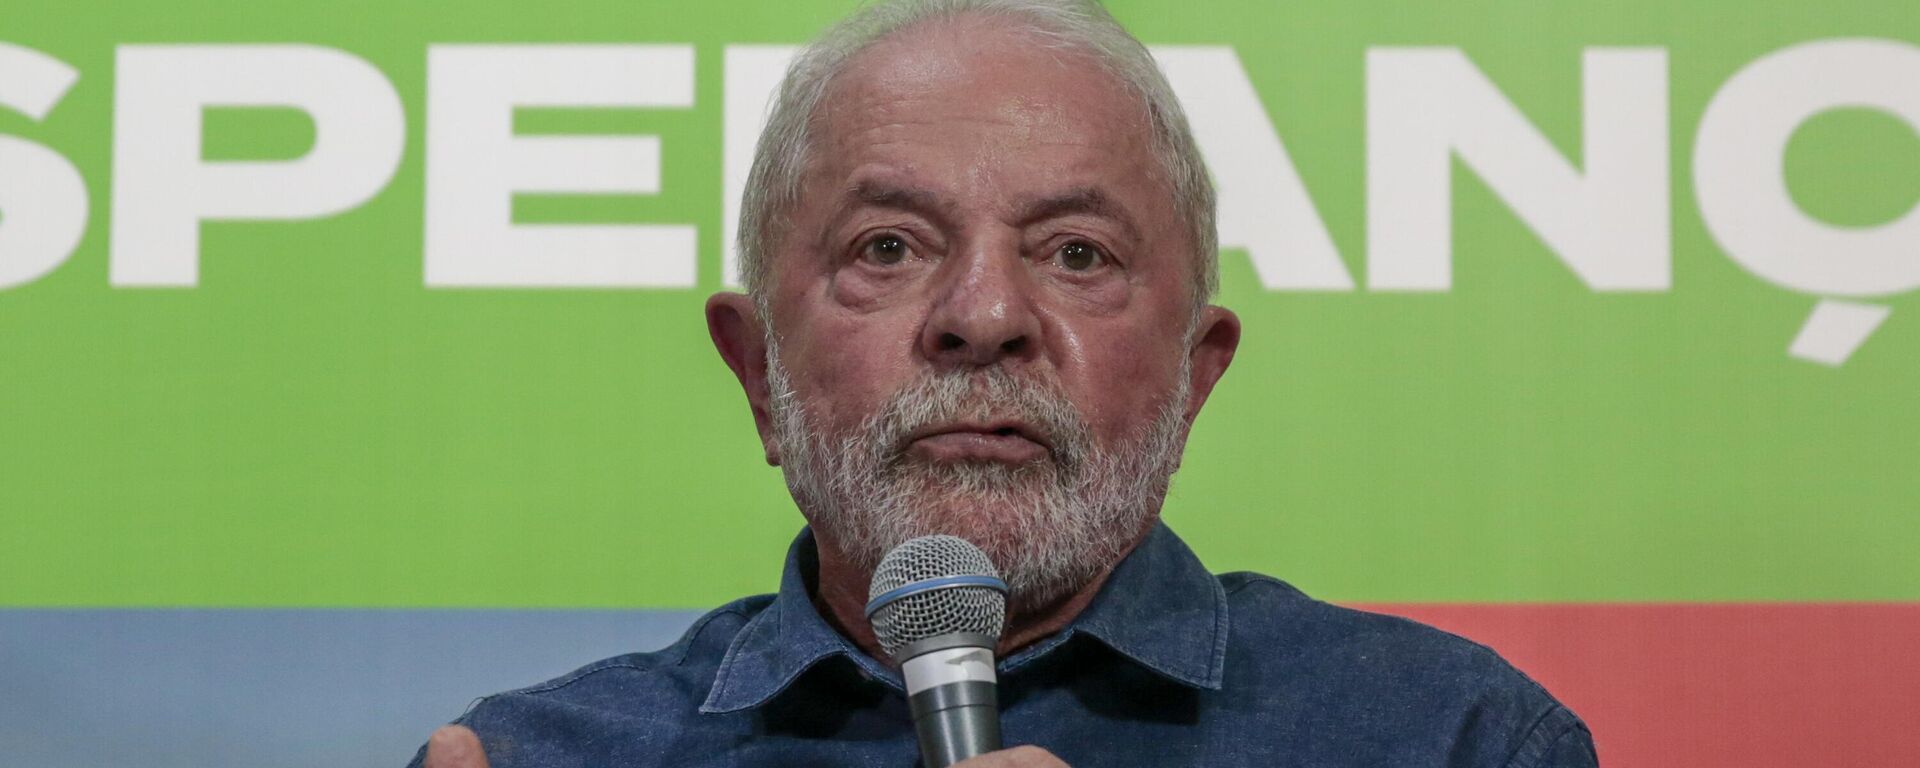 O ex-presidente Luiz Inácio Lula da Silva (PT) se reúne com a ex-ministra do Meio Ambiente Marina Silva (Rede, fora da foto), em São Paulo, no Brasil, em 12 de setembro de 2022 - Sputnik Brasil, 1920, 12.09.2022